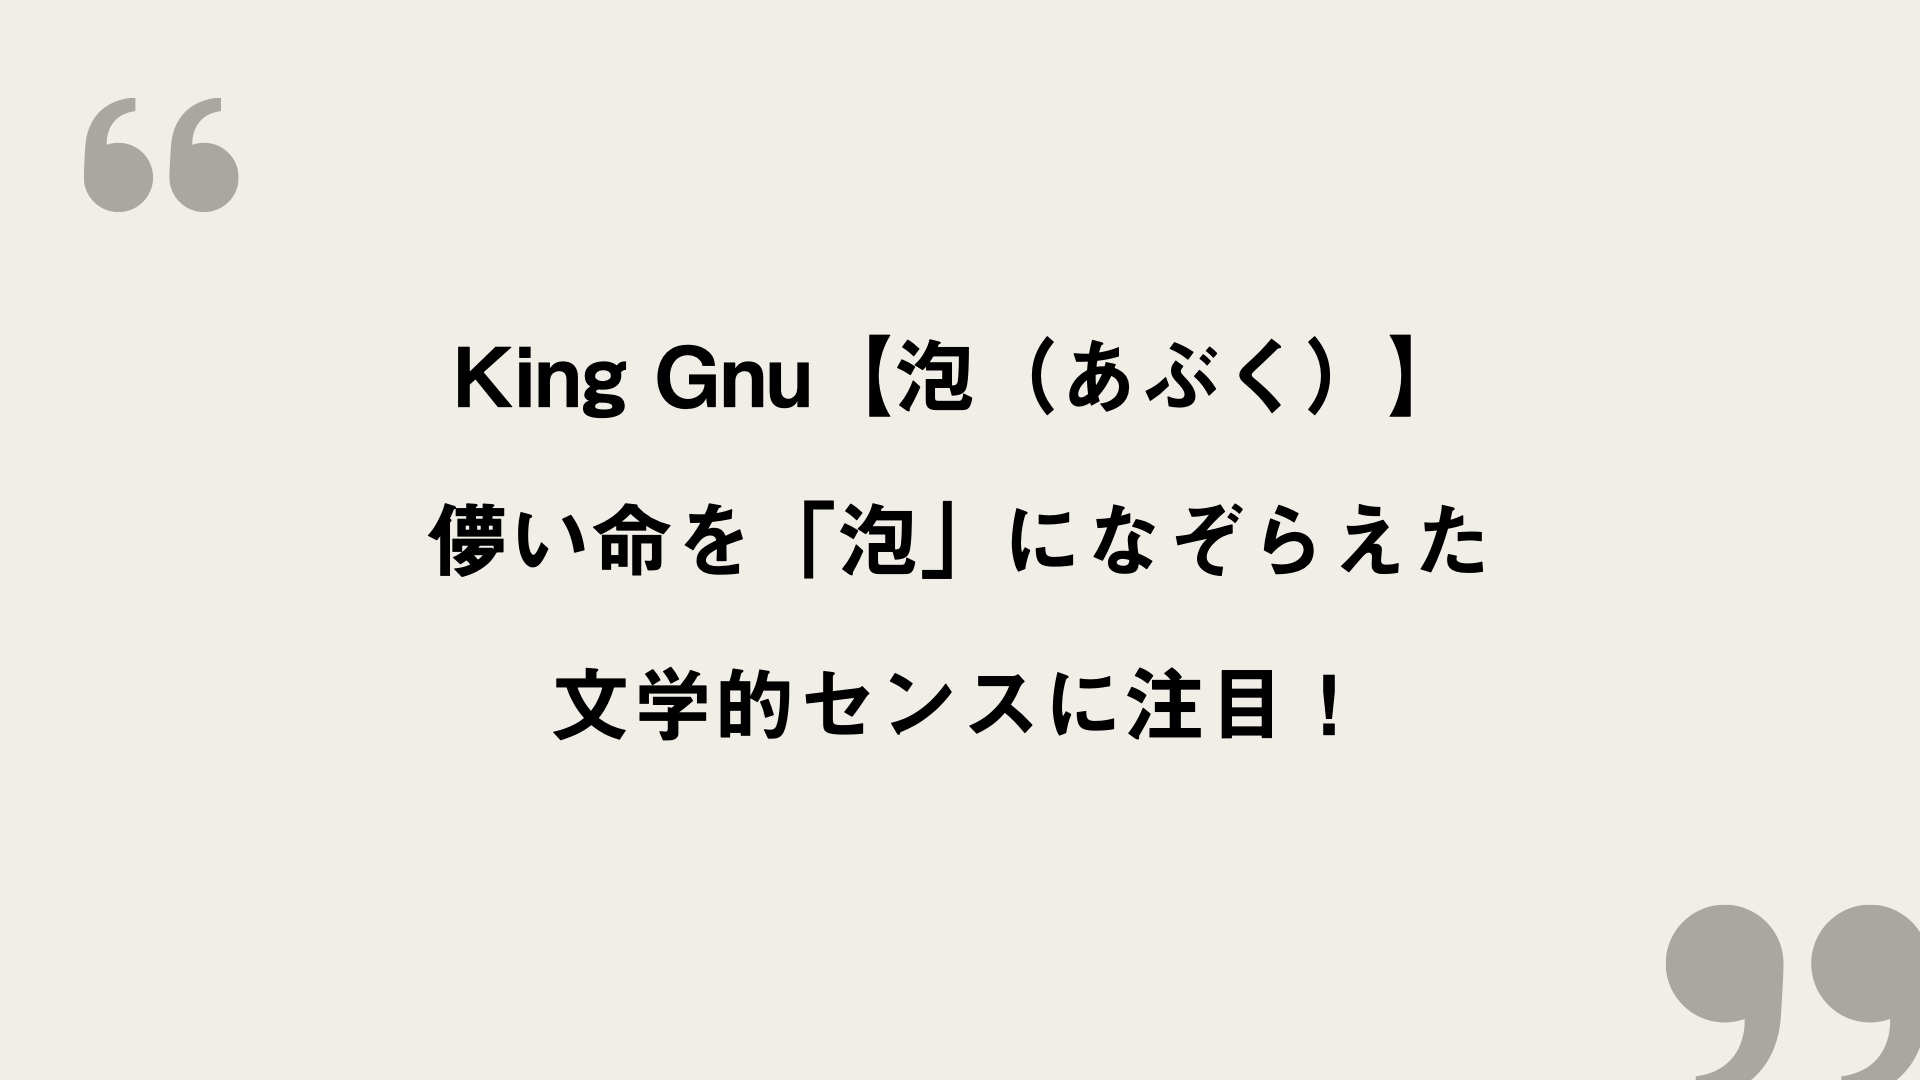 艇 歌詞 飛行 キングヌー King Gnu人気曲「飛行艇」がラグビーW杯で大注目!日本代表の勝利“後押し”―